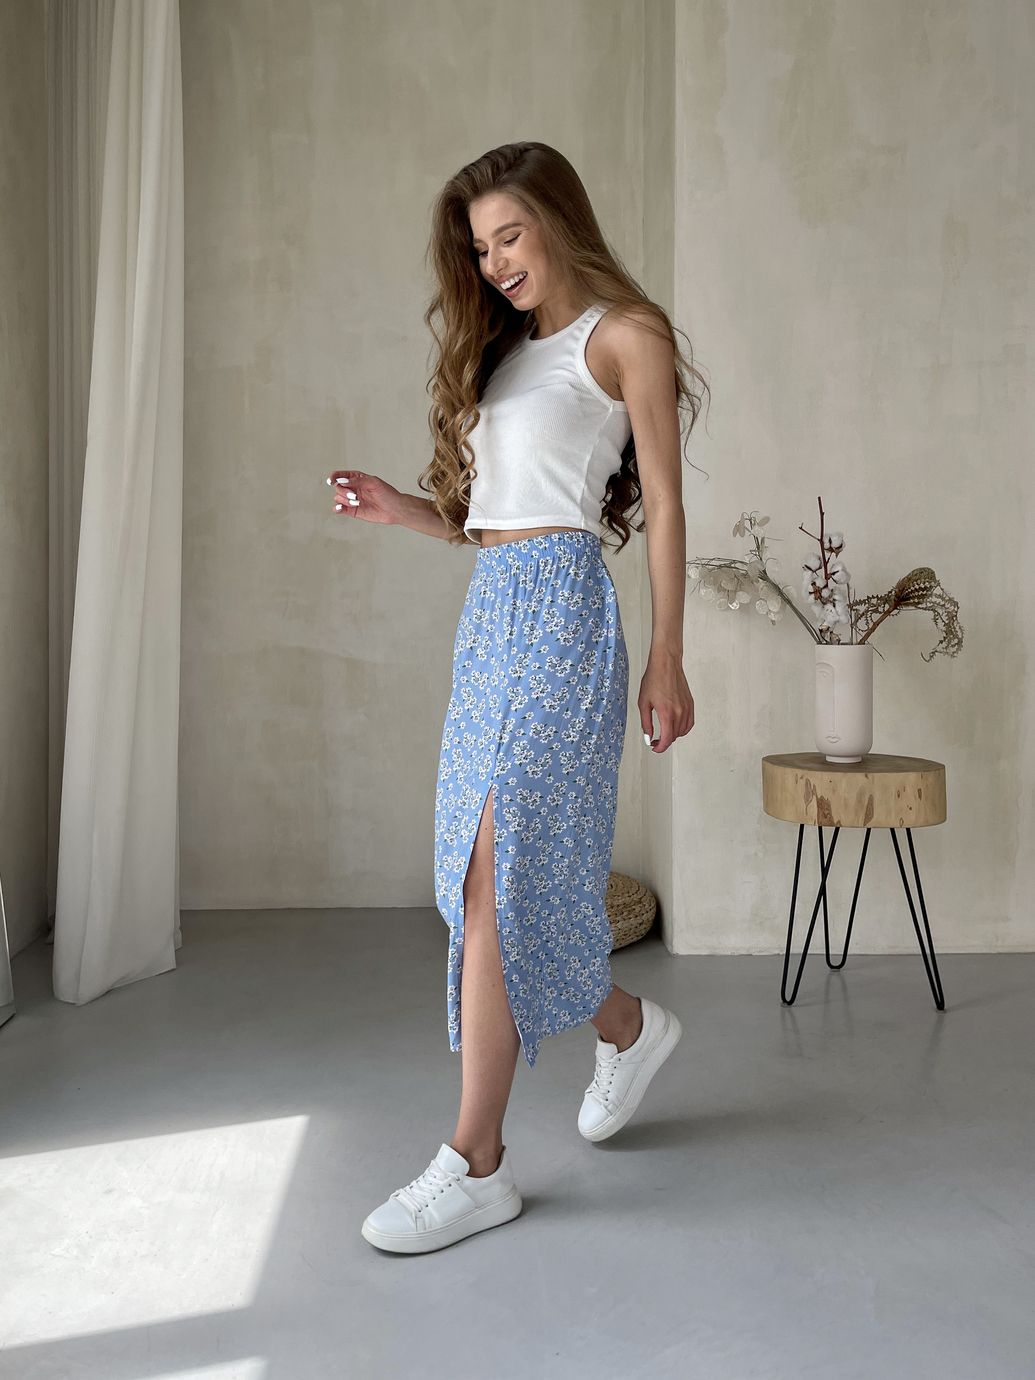 Купить Длинная женская юбка ниже колена с размером в цветочек Merlini Равенна 400000124, размер 42-44 (S-M) в интернет-магазине